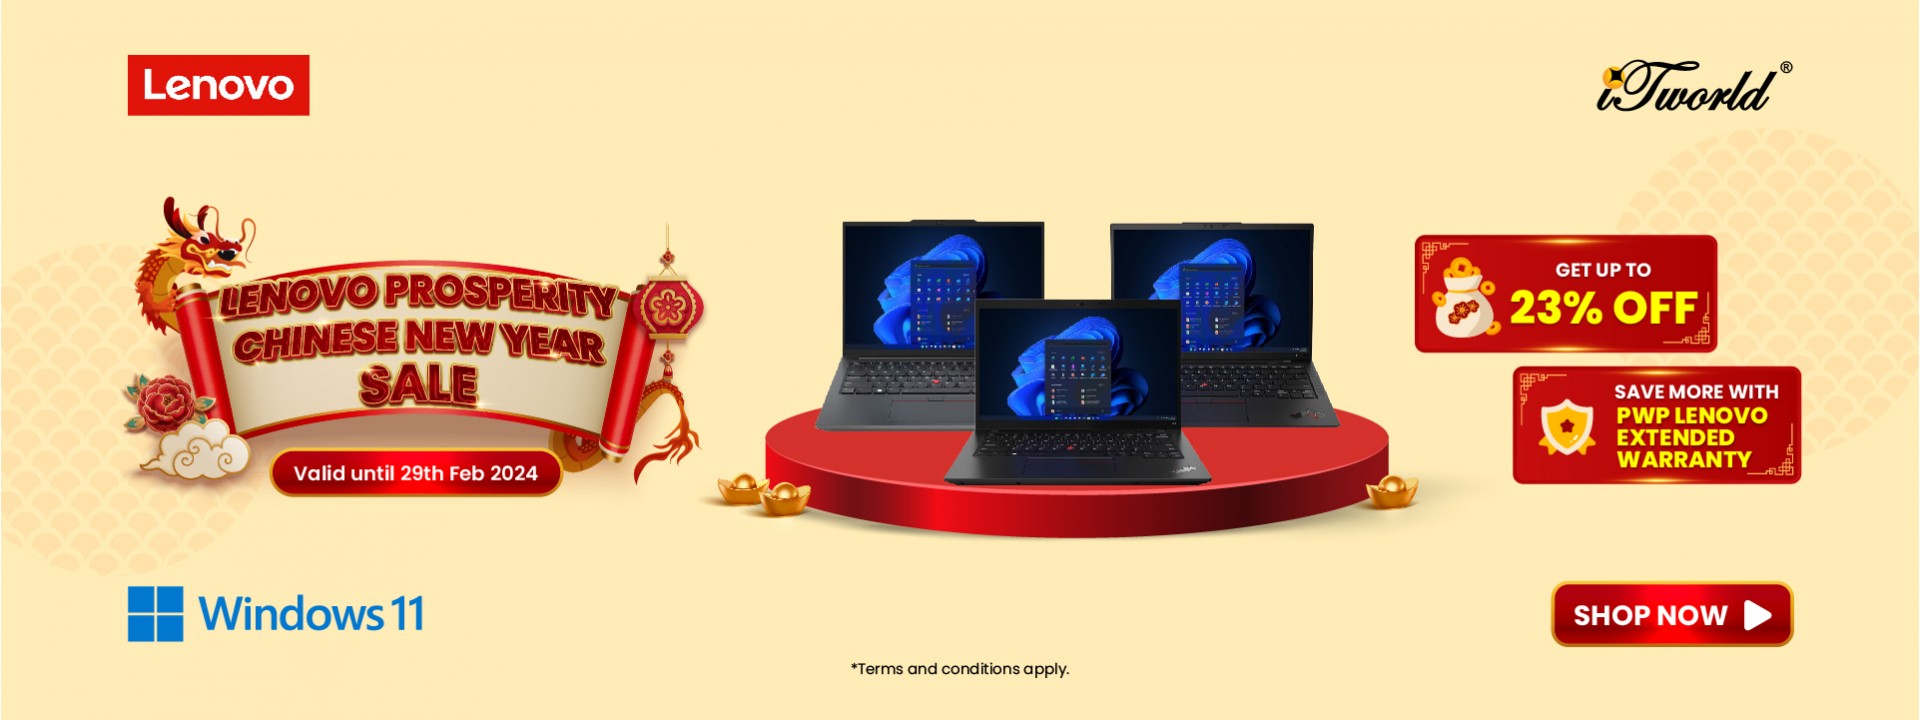 Lenovo Prosperity CNY Sale